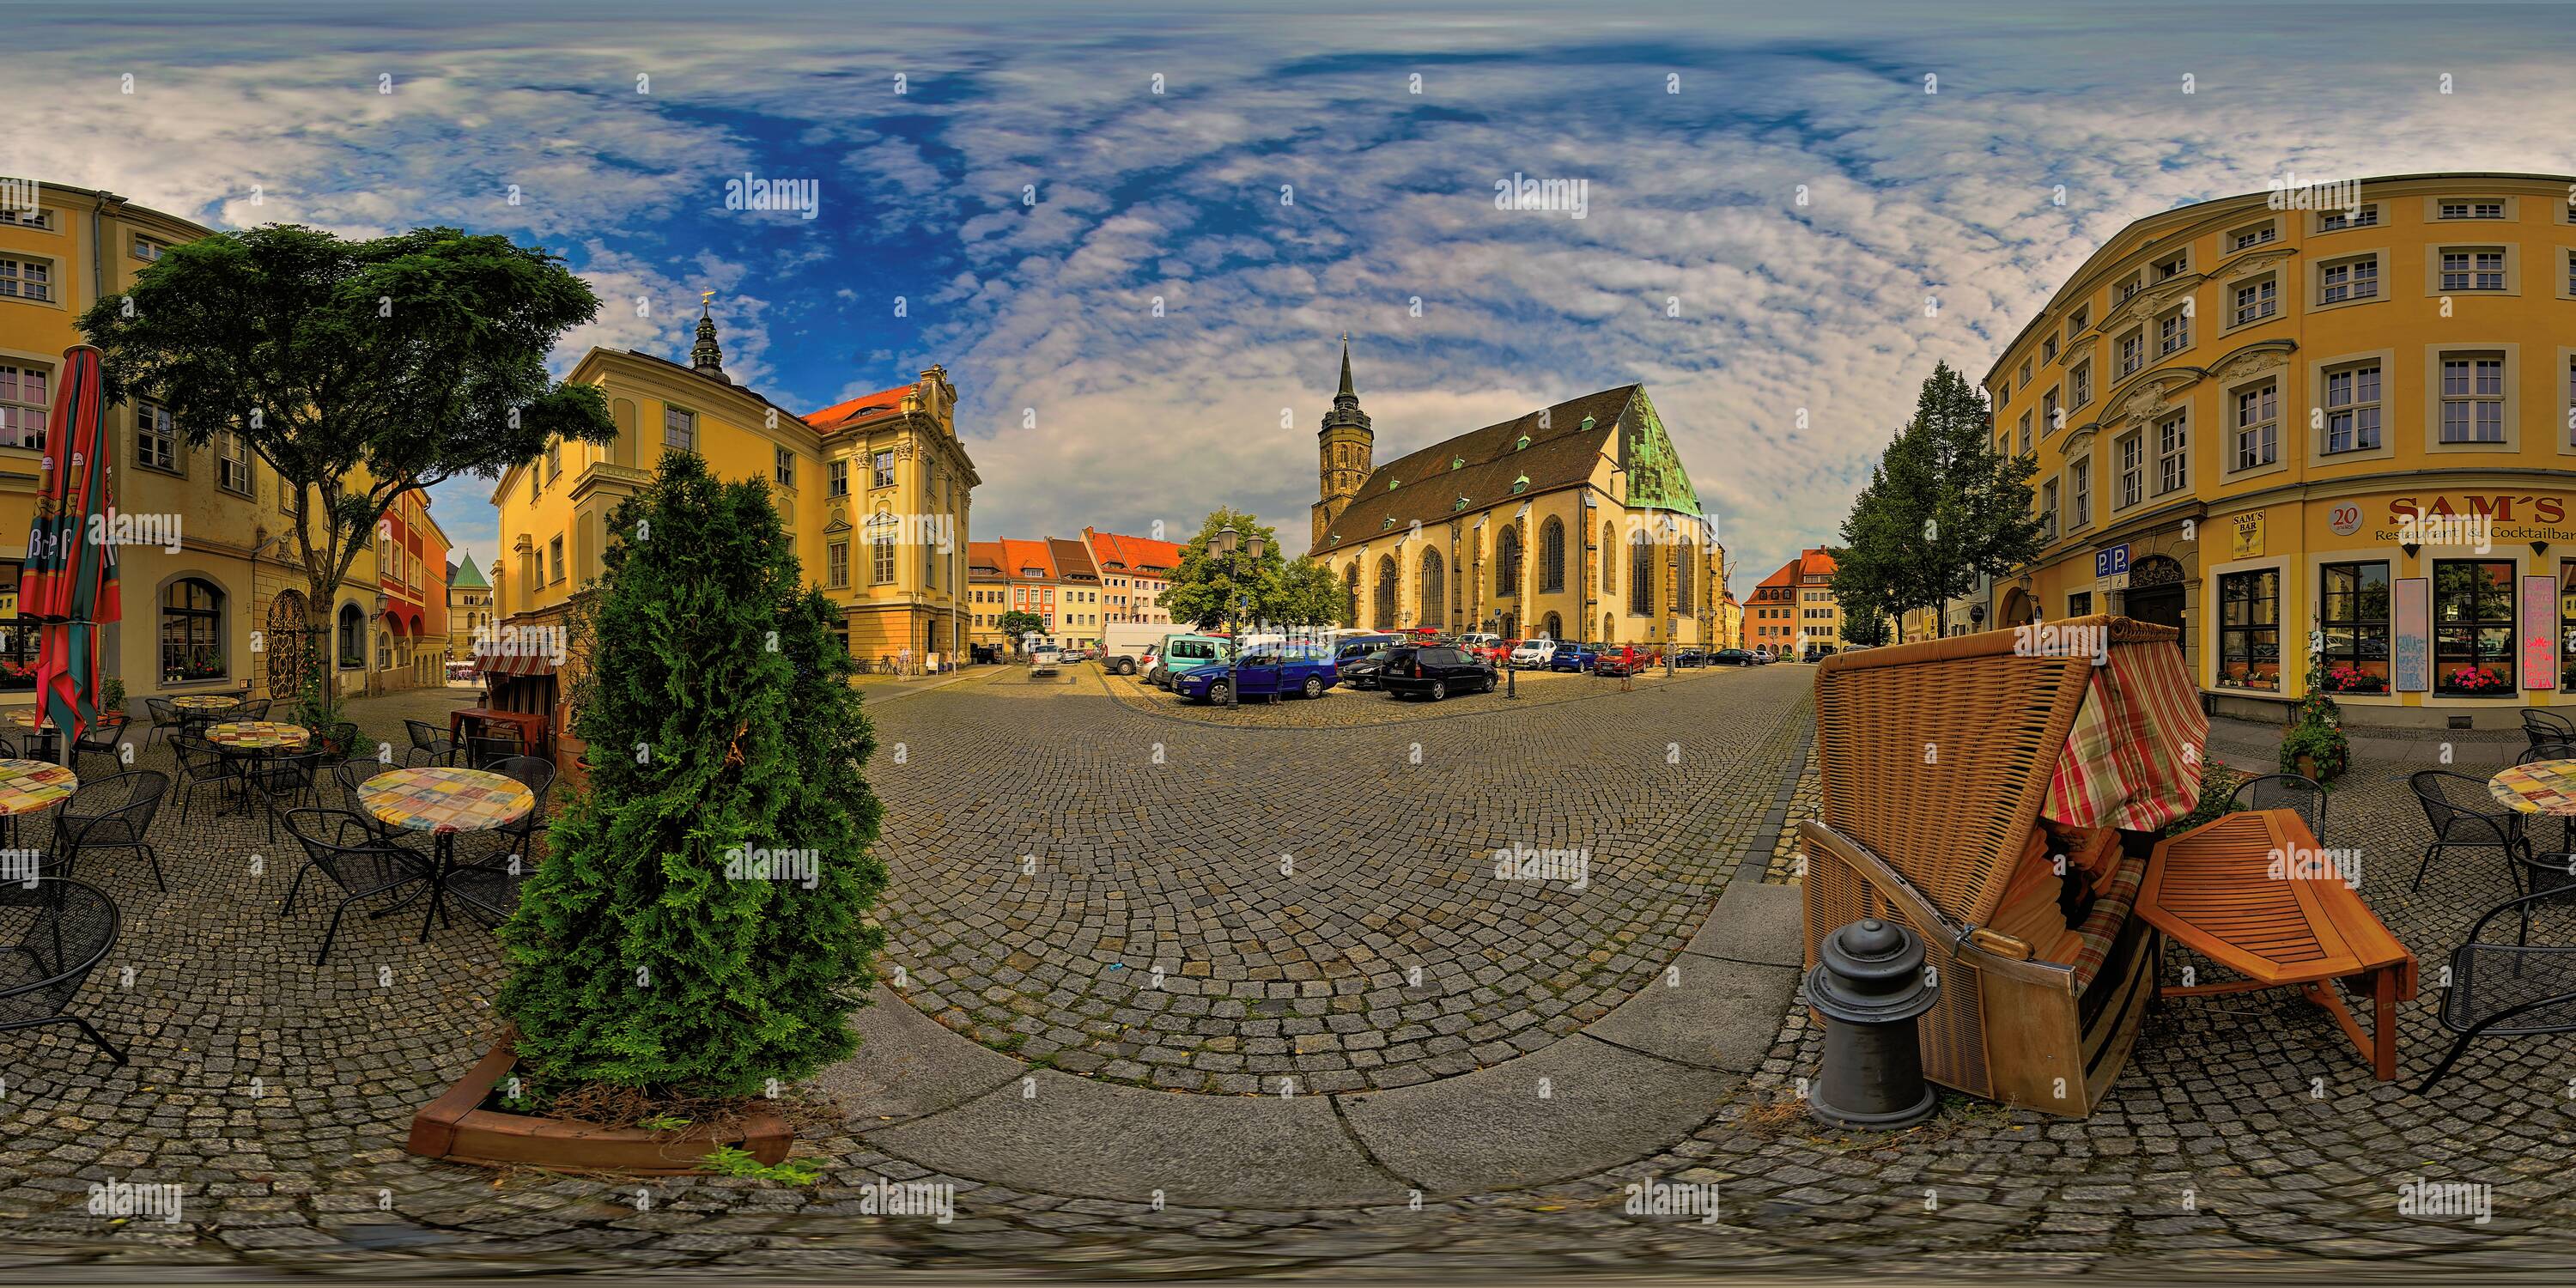 Vista de 360 grados de Bautzen, Casco antiguo, Catedral de San Pedro,  Ayuntamiento, Fleischmarkt 5011 - Alamy